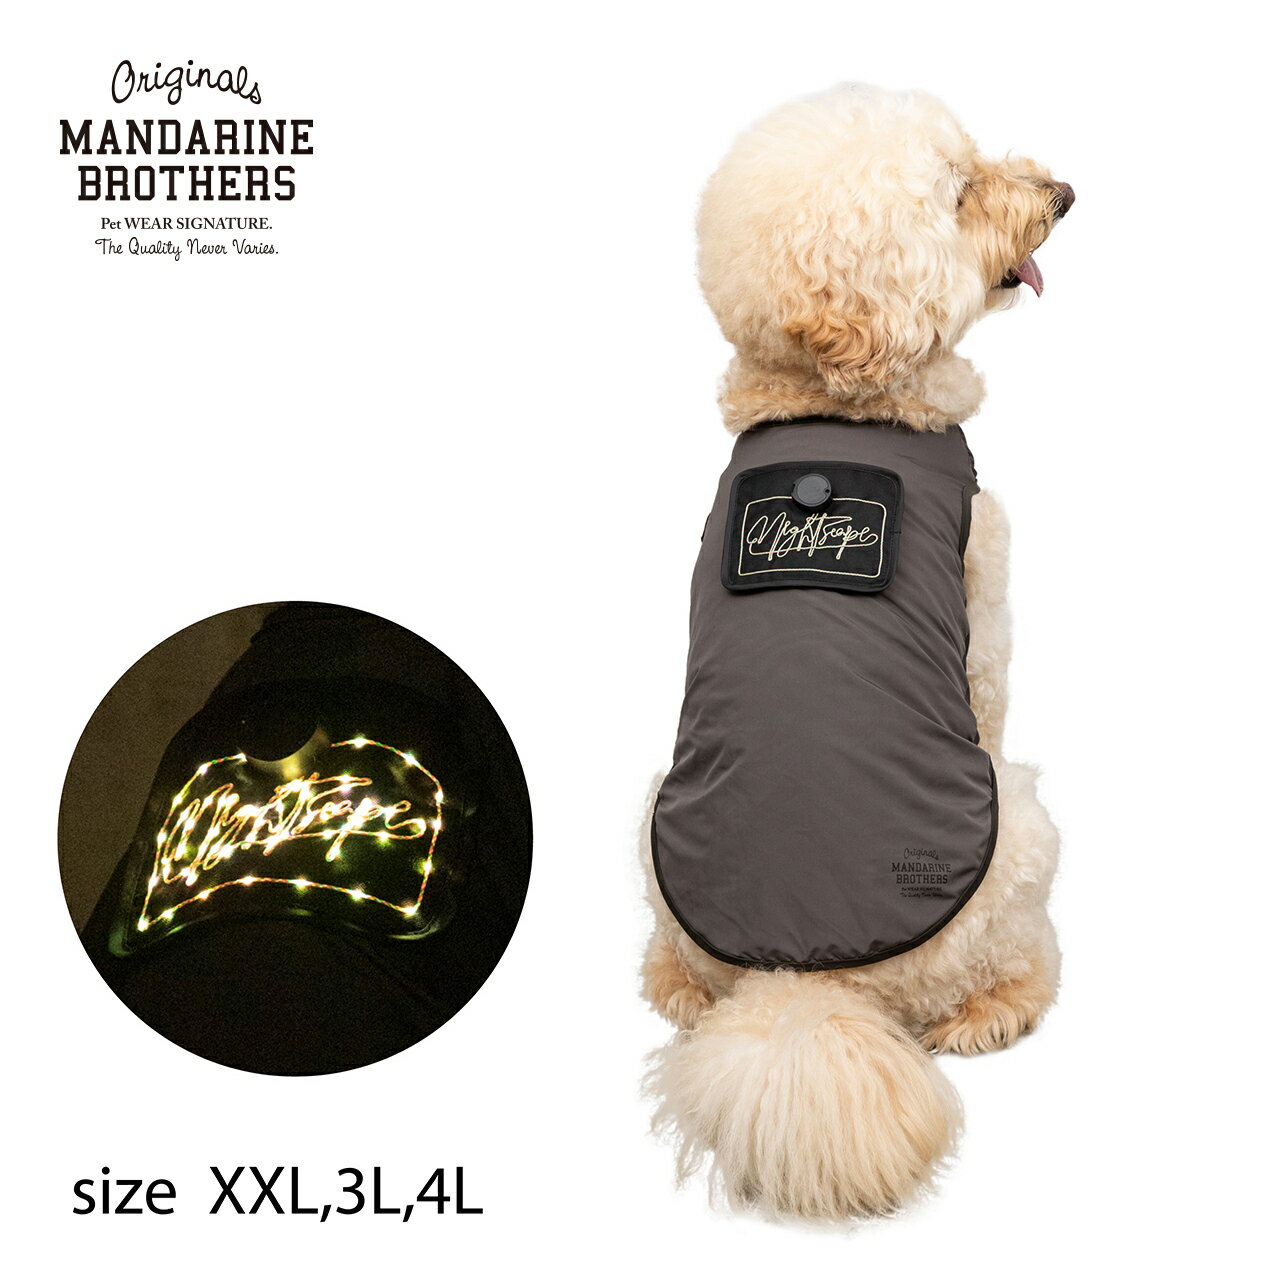 楽天マンダリンブラザーズ光る 洋服 犬服 犬 服ドッグウェア LED Tシャツ ライト 夜 散歩 大型犬 MANDARINE BROTHERS / NIGHTSCAPE LED T-SHIRT（XXL,3L,4L）